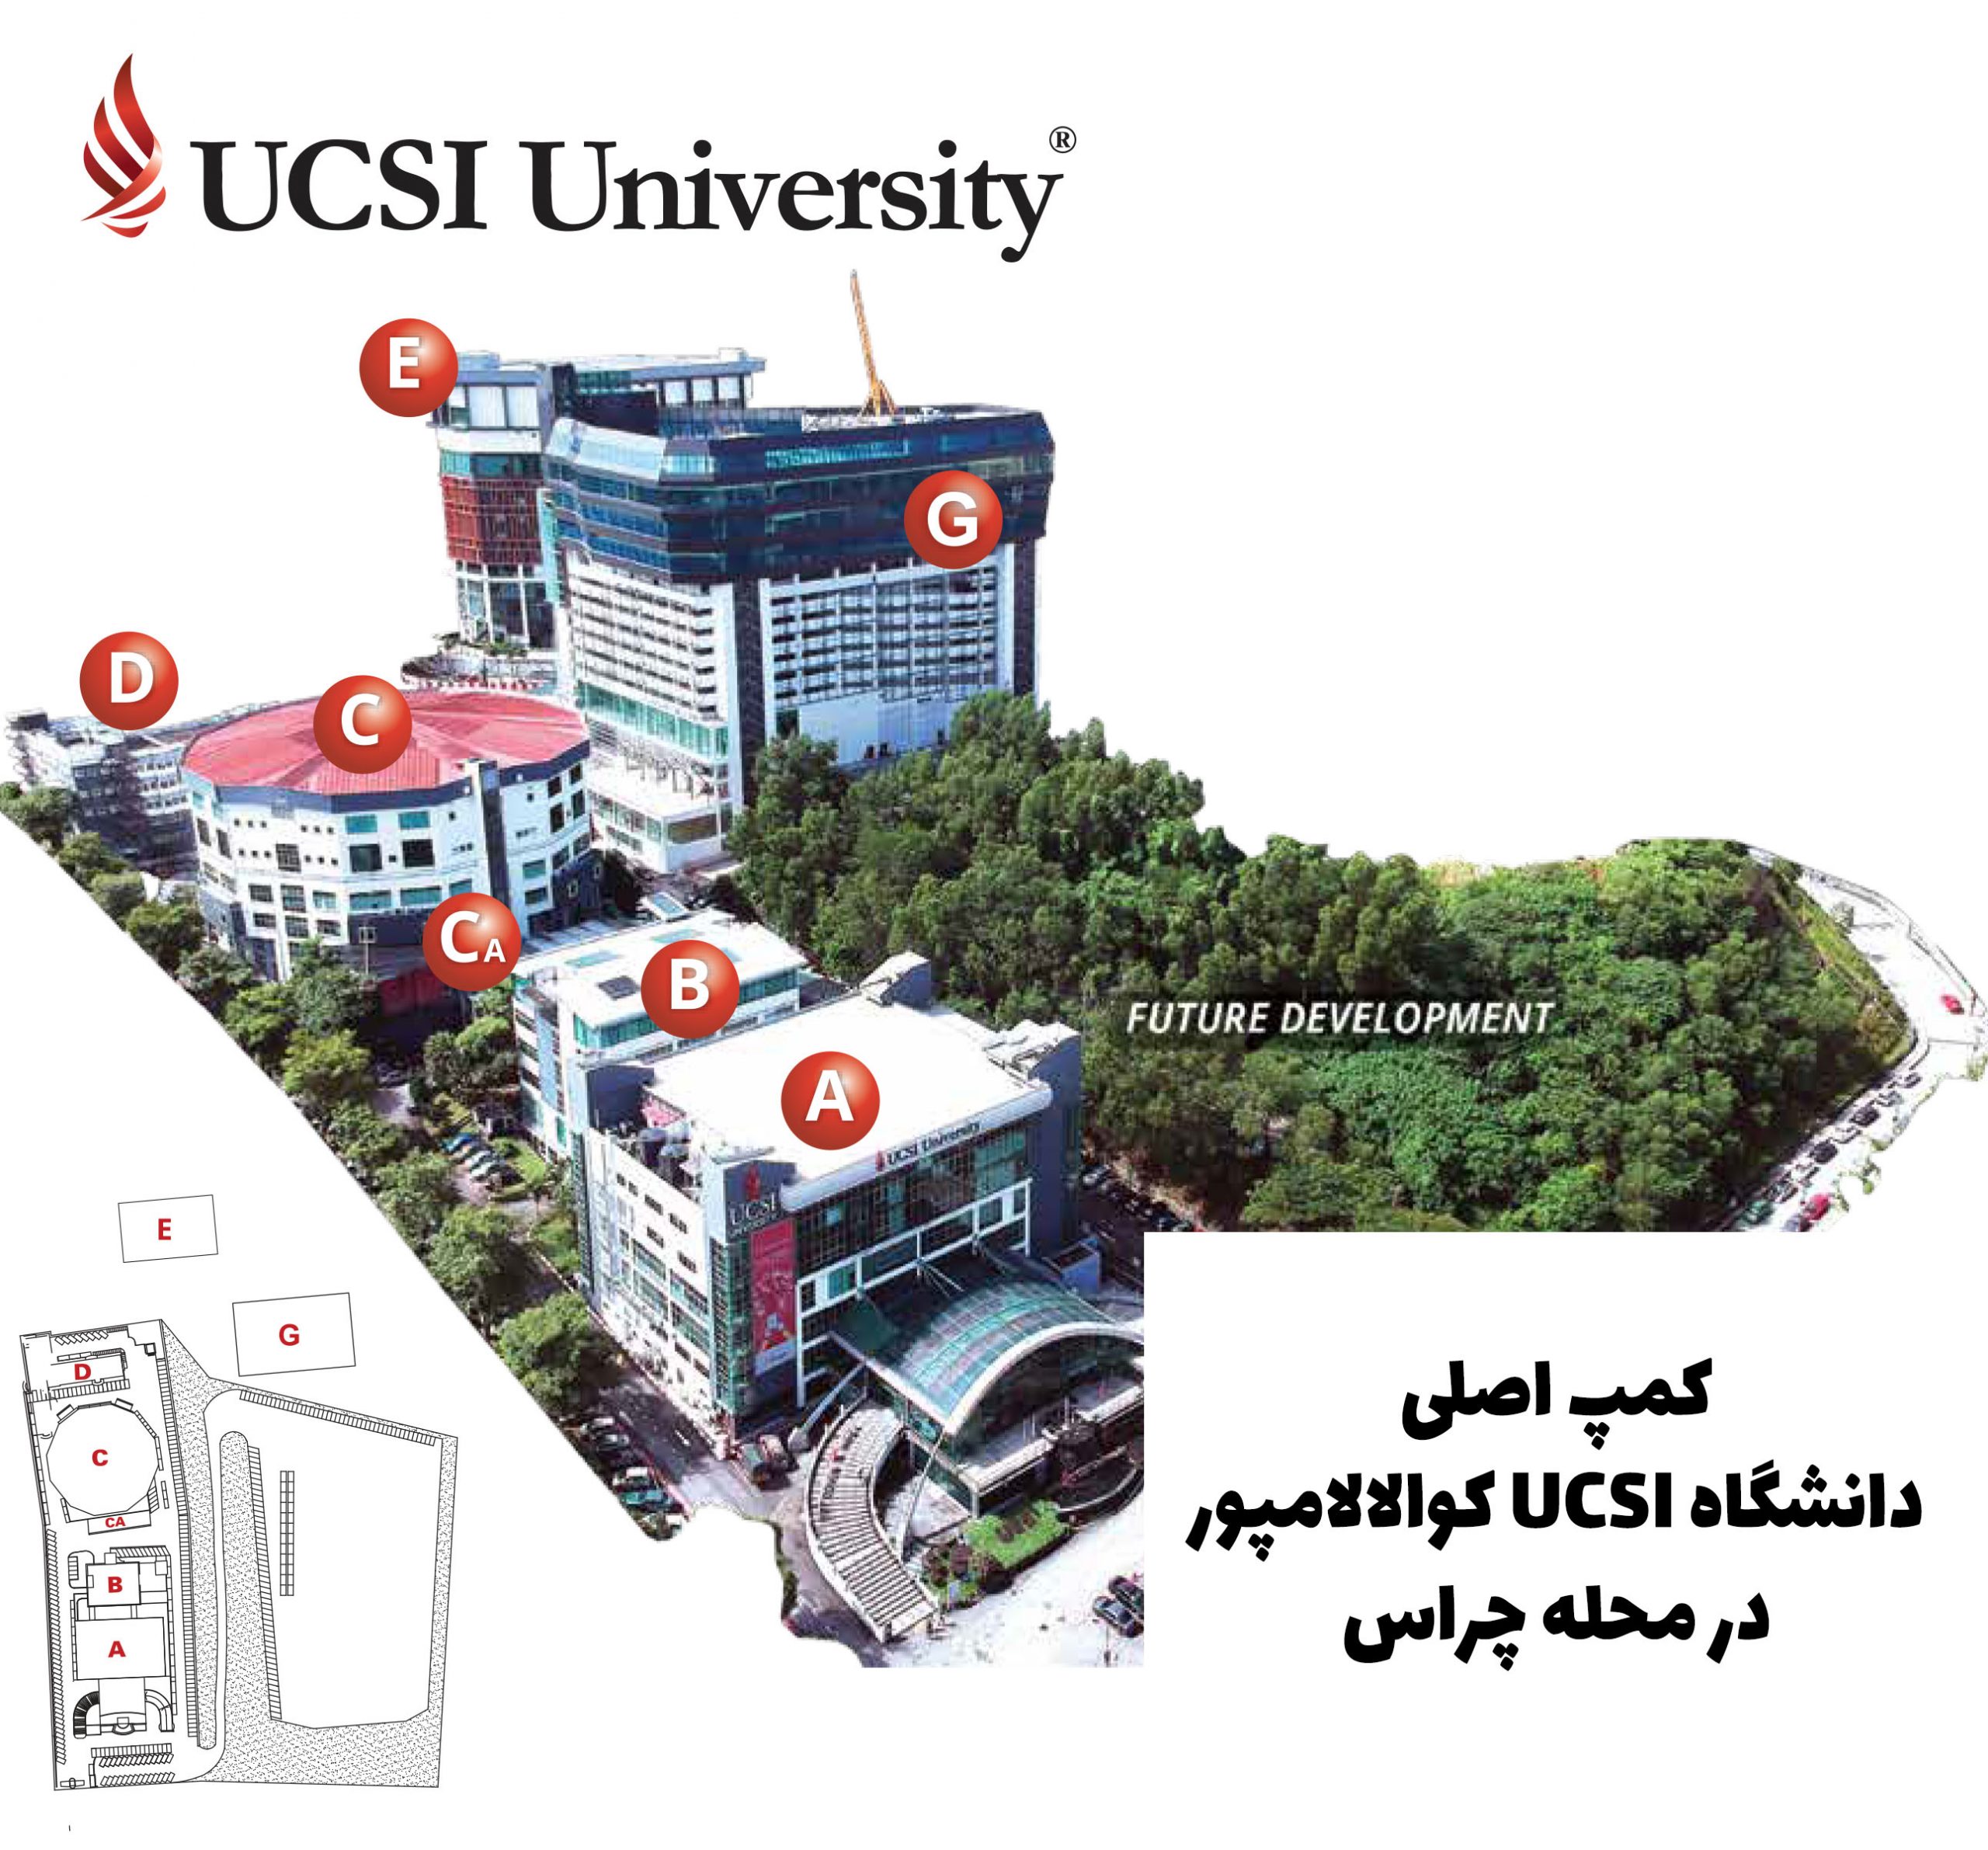 دانشگاه UCSI مالزی